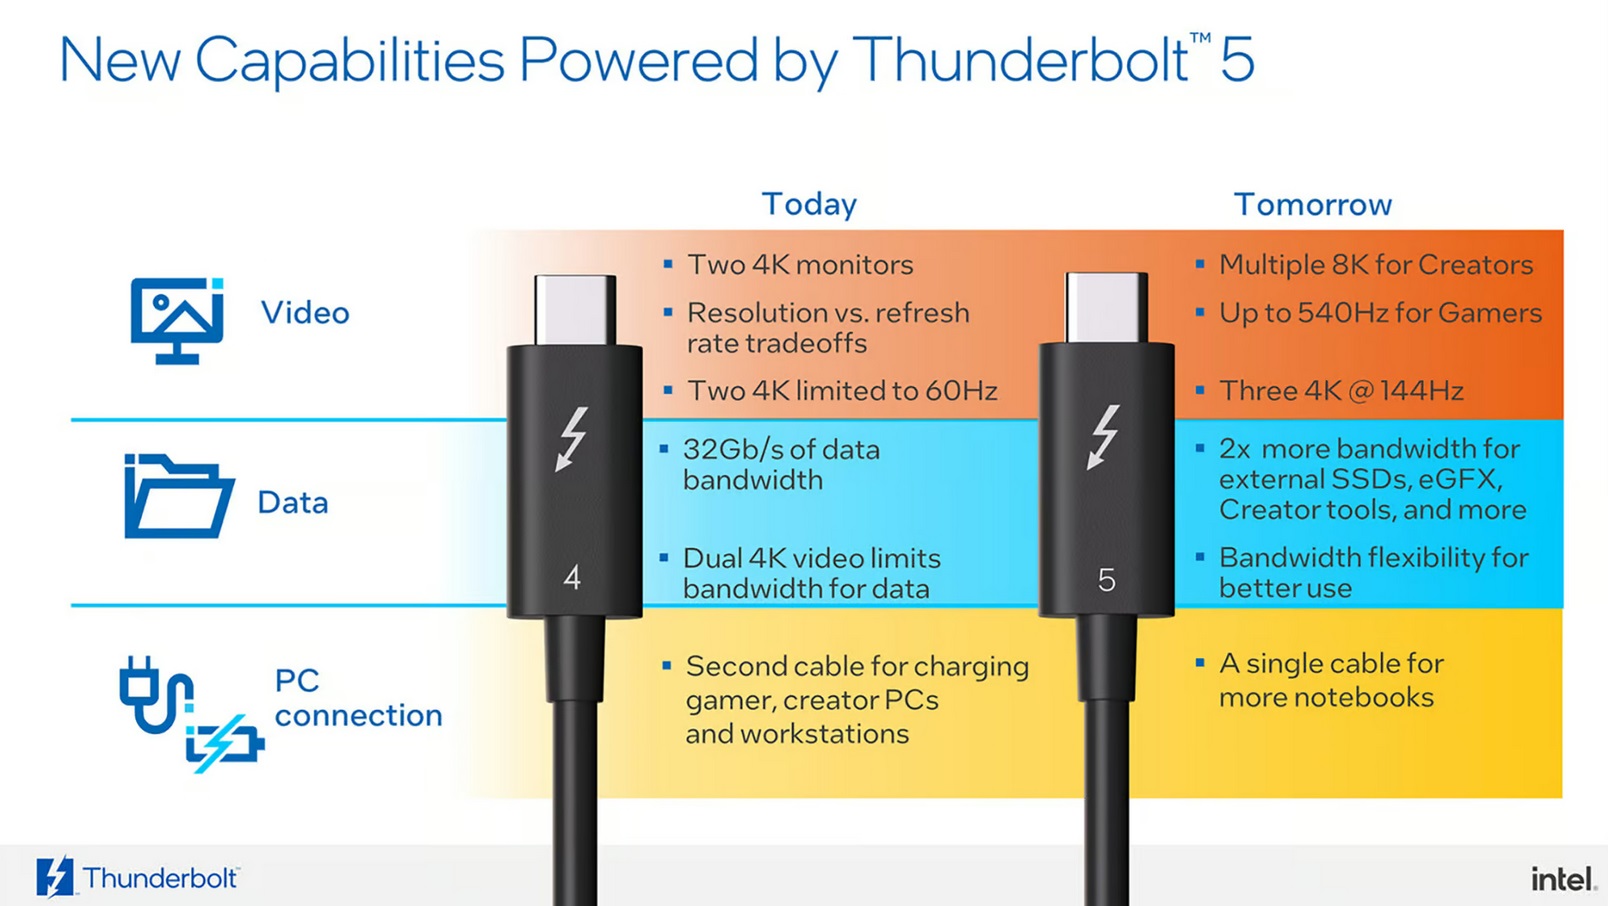 Rozhranie Thunderbolt 5 bolo navrhnuté tak, aby výrazne zvýšilo rýchlosť pripojenia a šírku prenosového pásma.